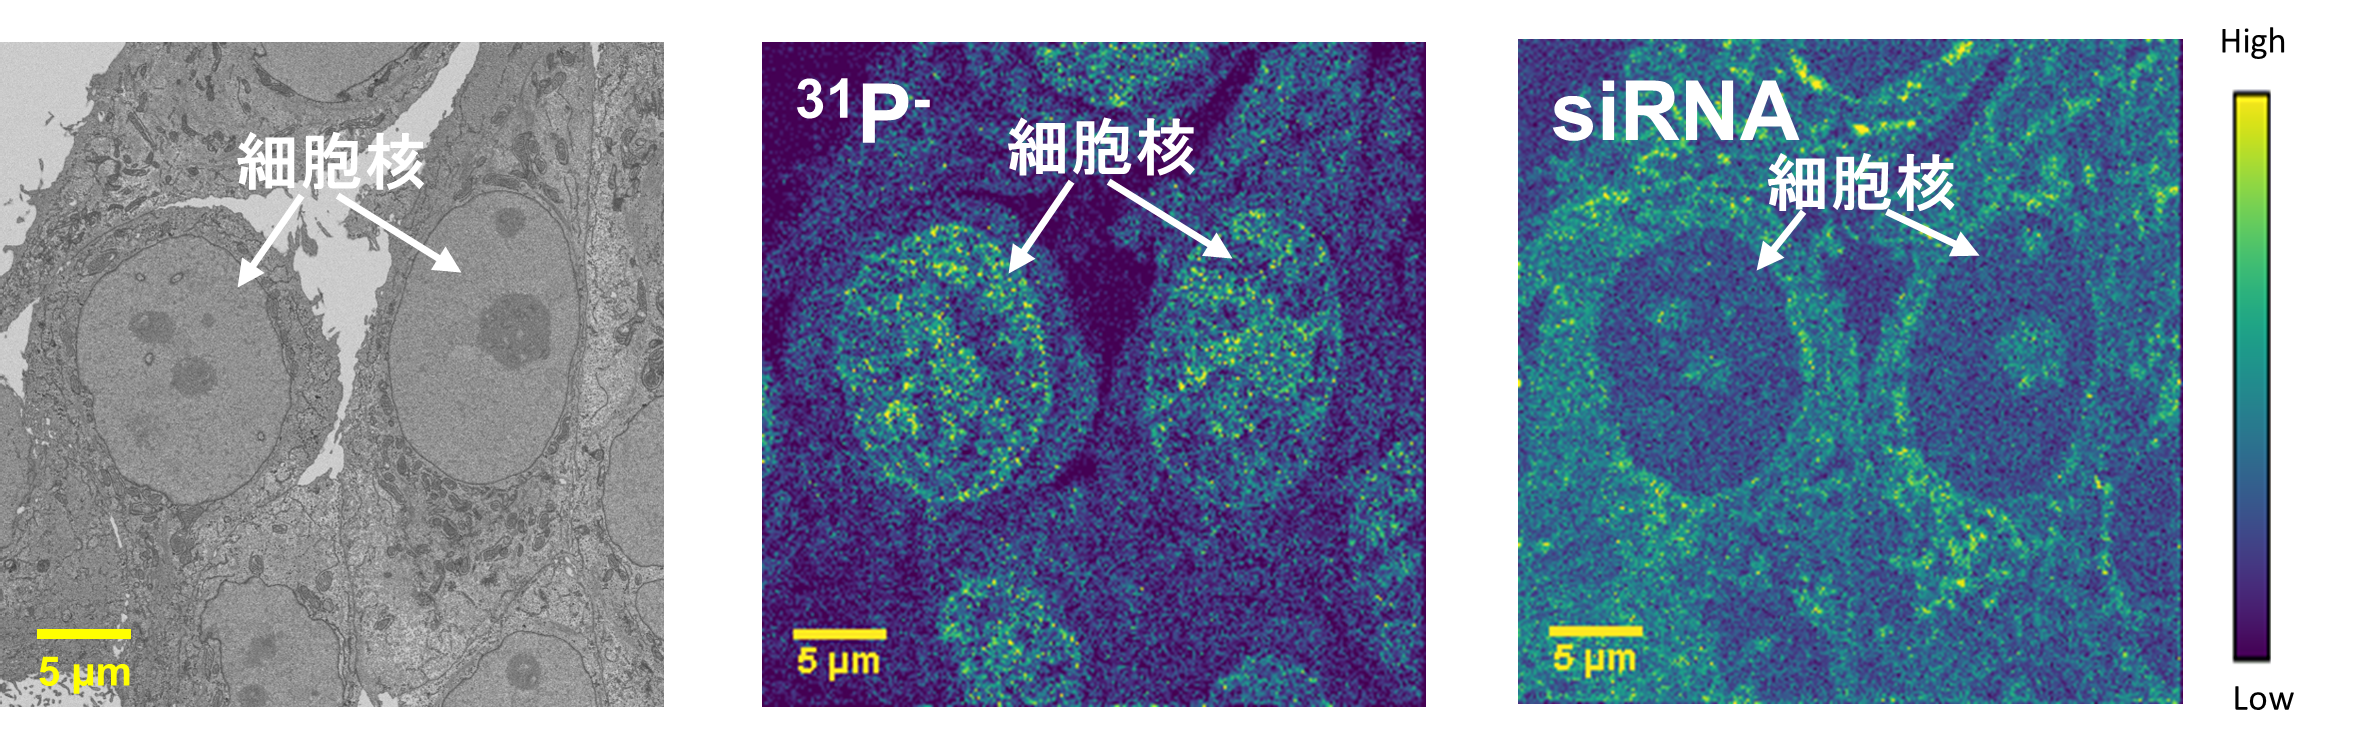 図１　培養細胞に導入したsiRNAの細胞内分布像
（左）SEM観察像、（中）31P-のNanoSIMS像、（右）siRNAのNanoSIMS像